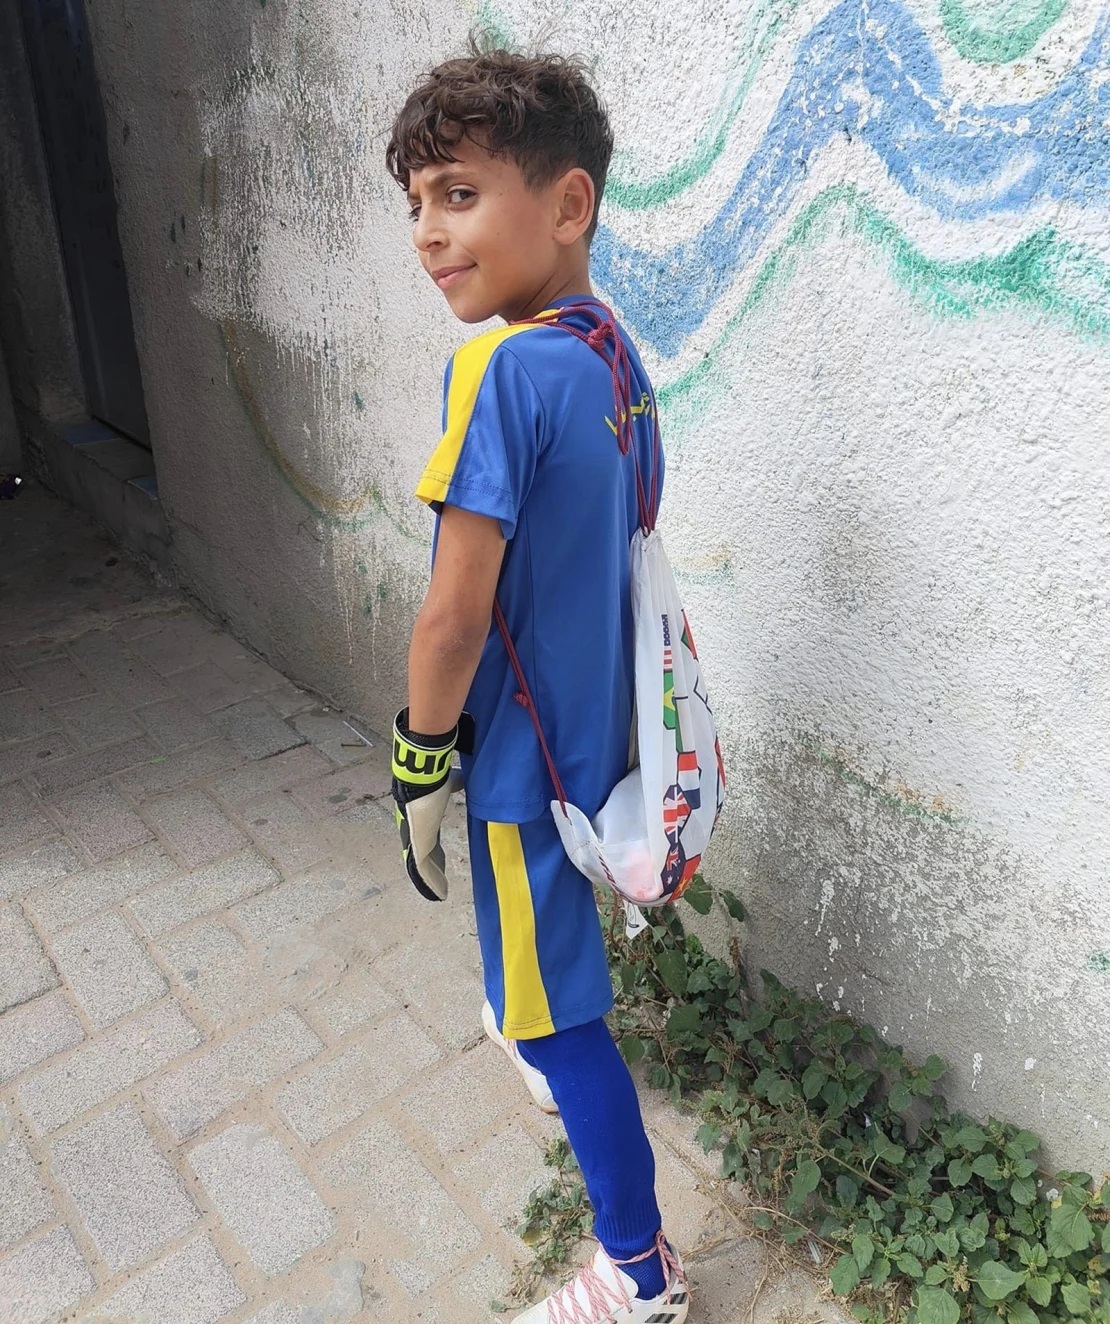 オマルくんはサッカー選手になることを夢見ていた/Hani Almadhoun